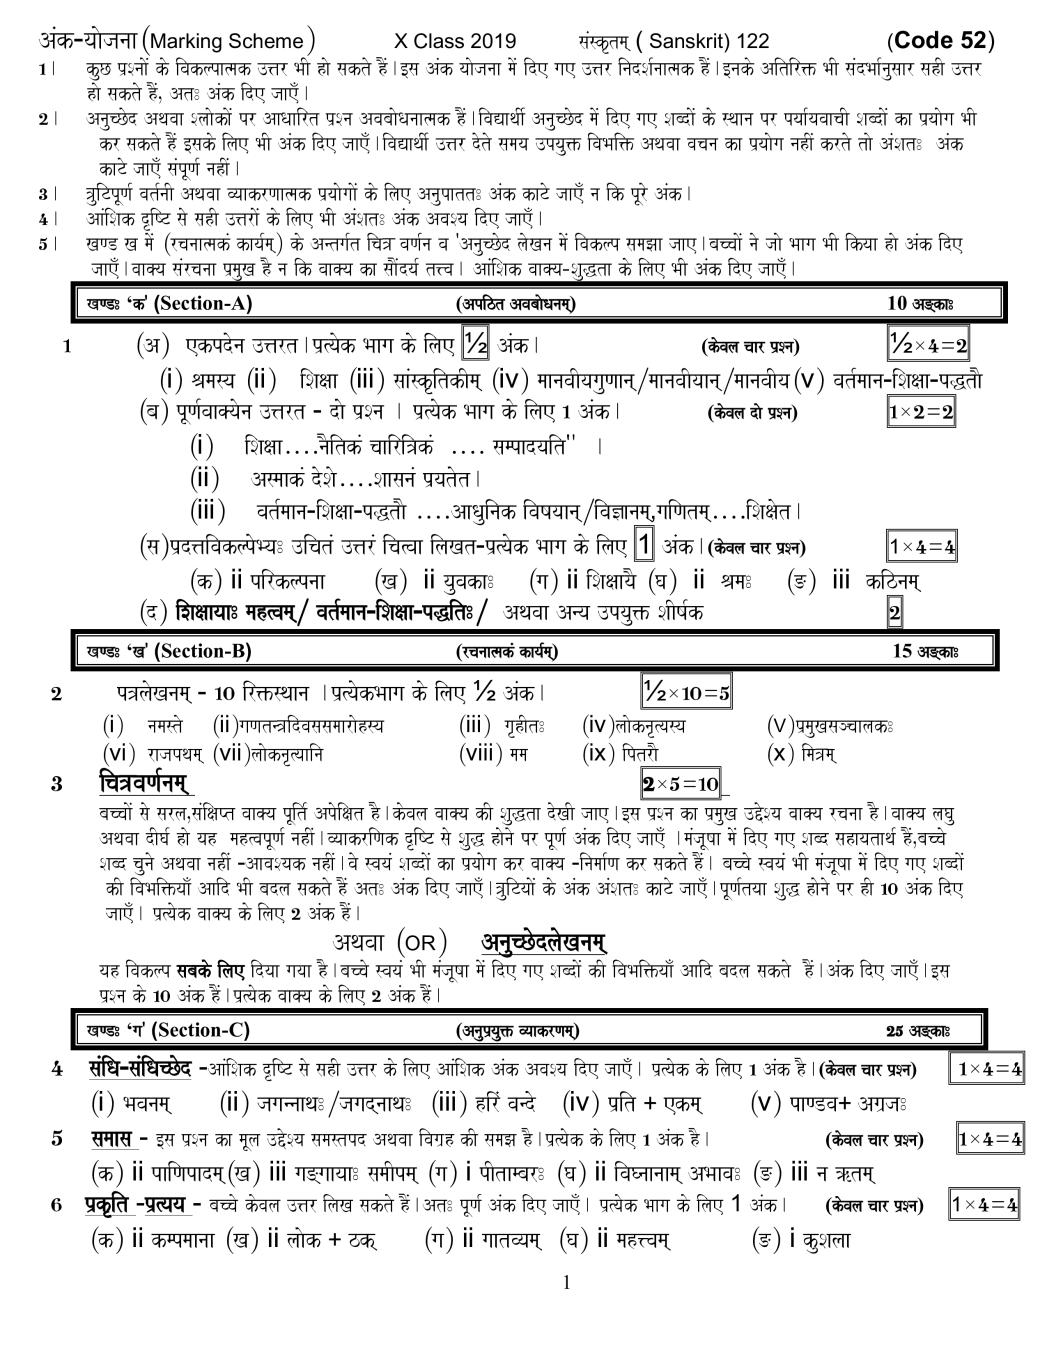 CBSE Class 10 Sanskrit Question Paper 2019 set 52 Solutions - Page 1